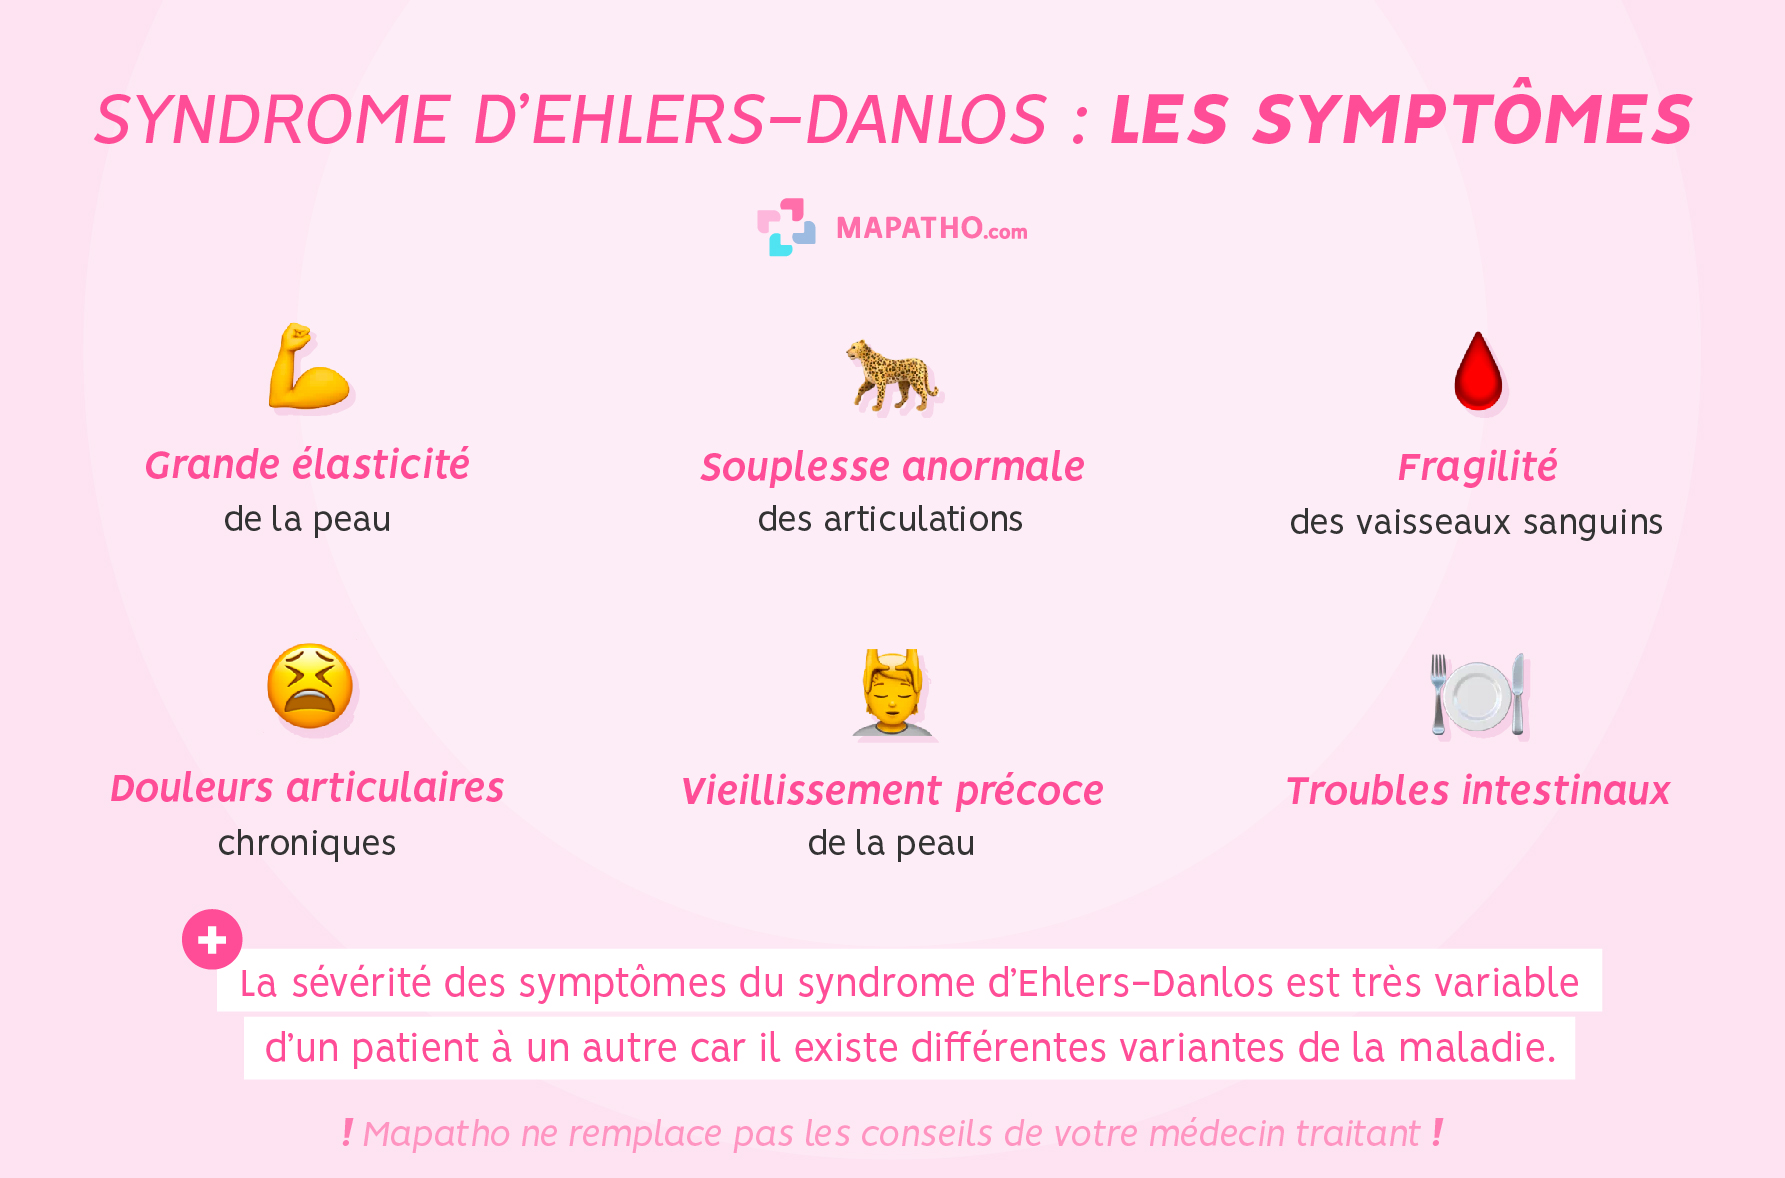 Les symptômes du syndrome d'ehlers Danlos